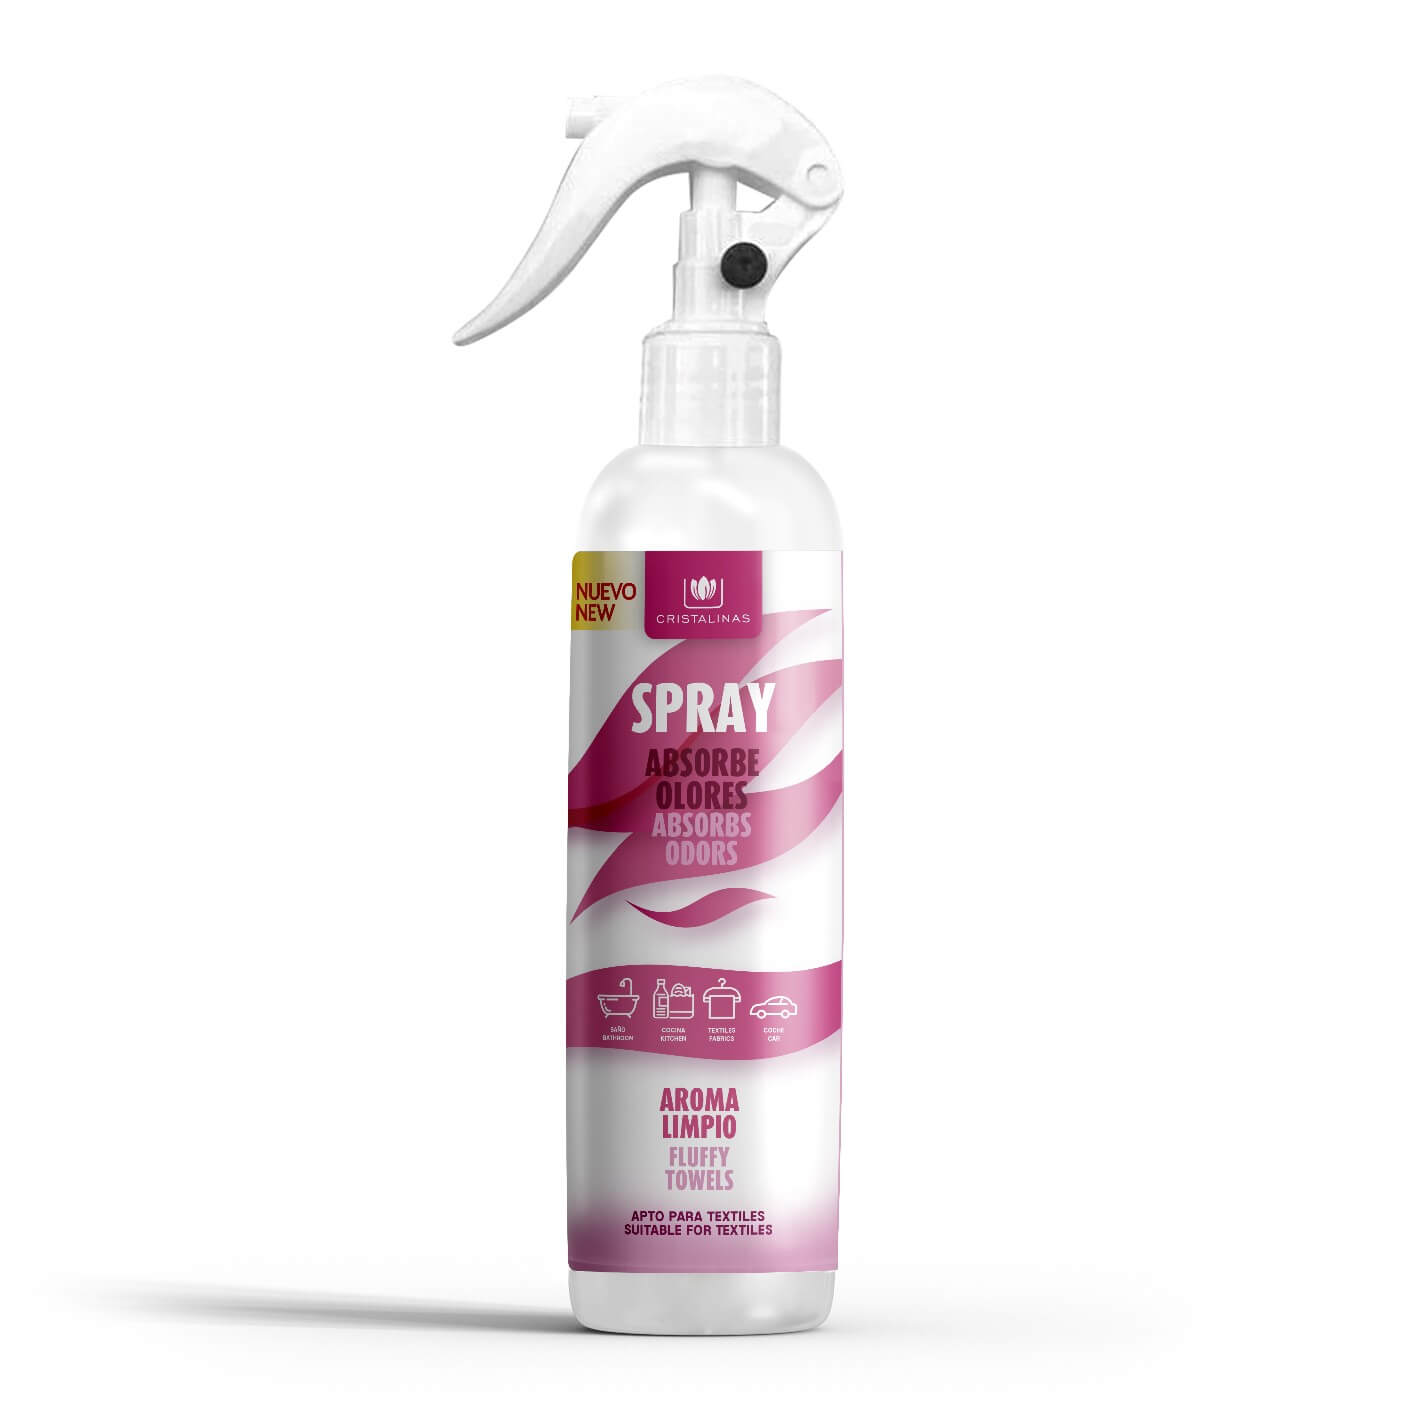 Ambientador spray eliminador de olores Cotonet